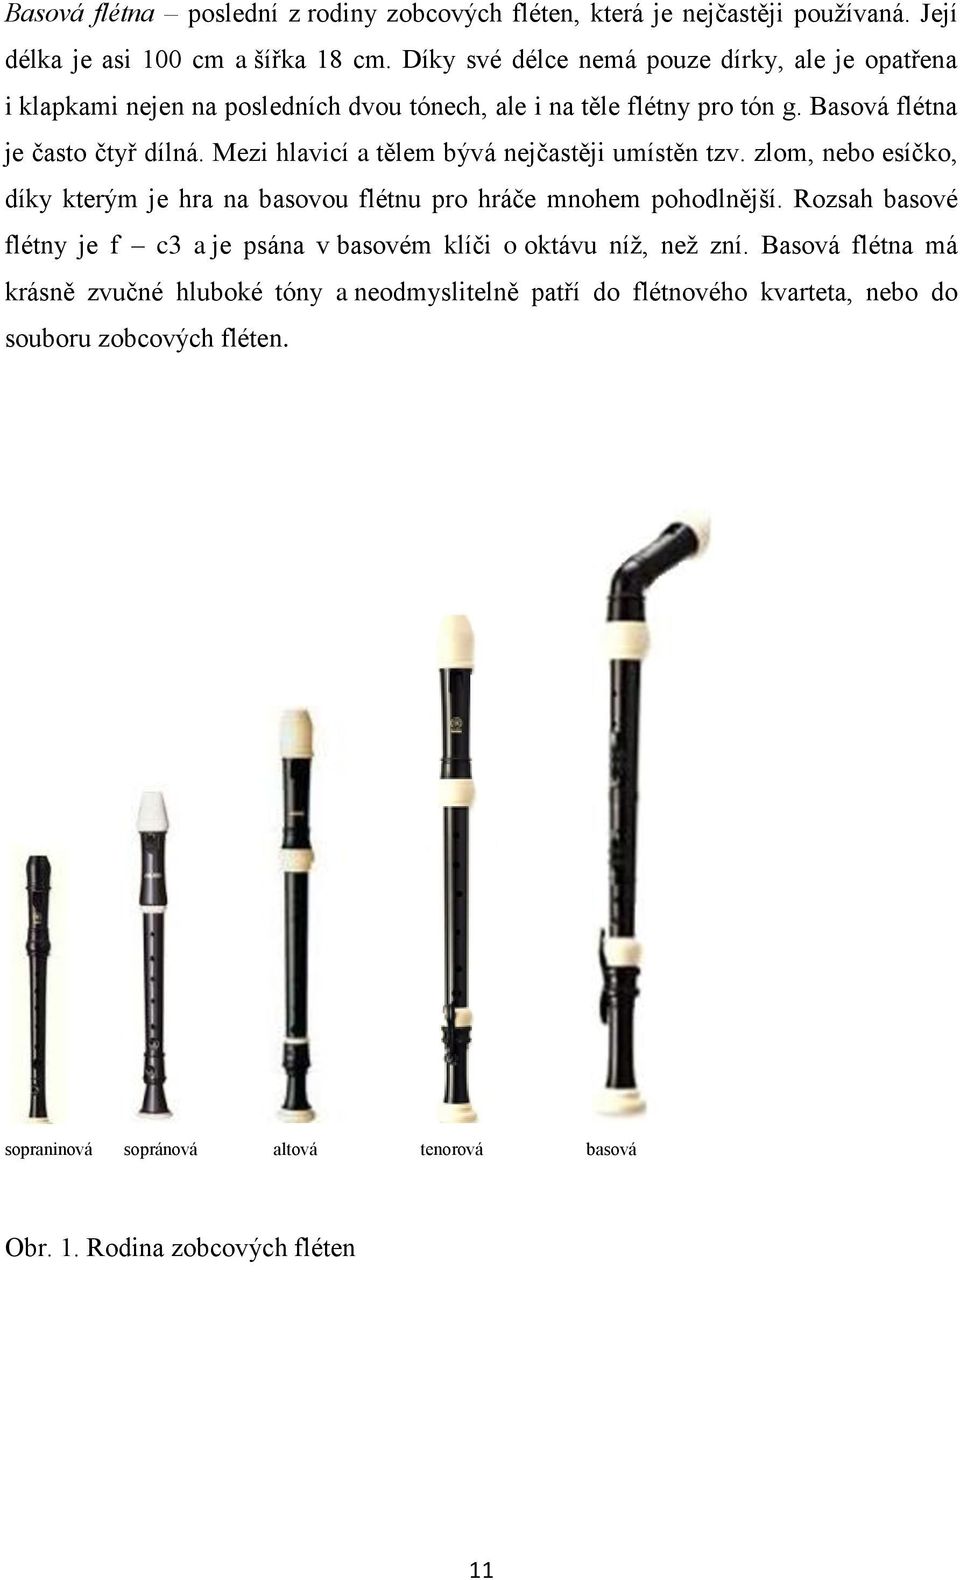 Zobcová flétna hudební nástroj nebo zdravotní pomůcka pro děti předškolního  věku? - PDF Free Download